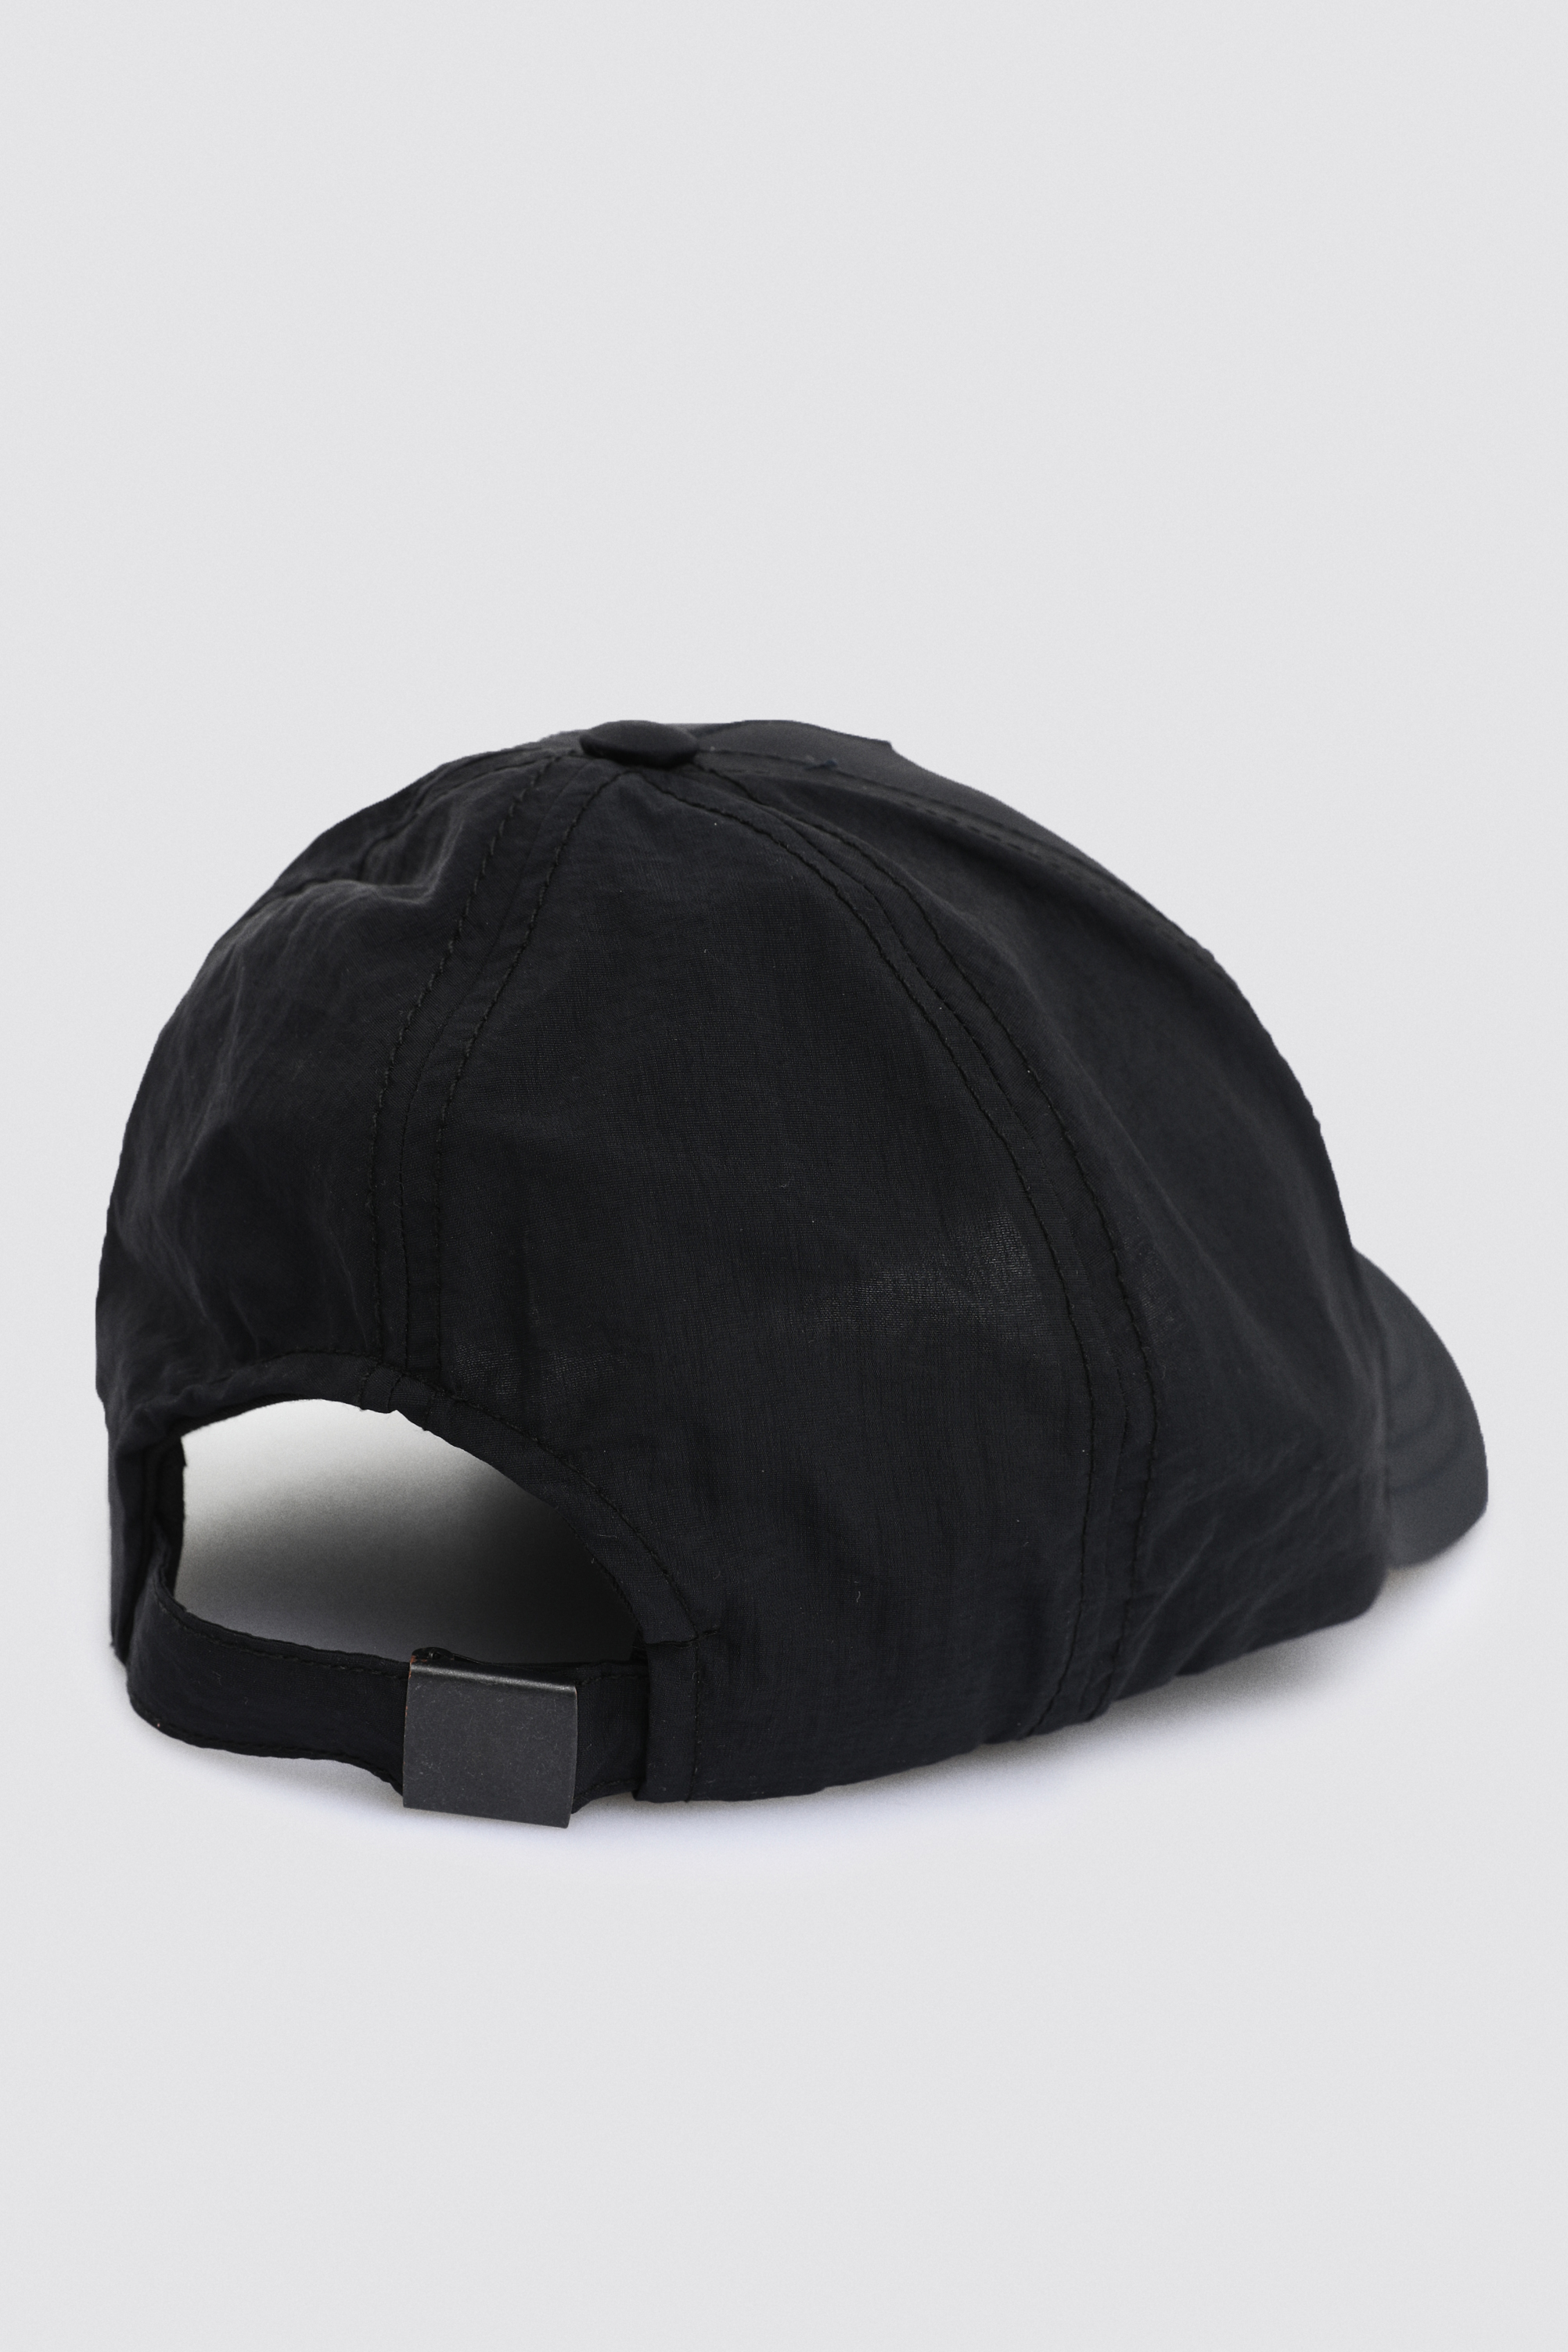 Damat Tween Tween Siyah %100 Pamuk Şapka. 4